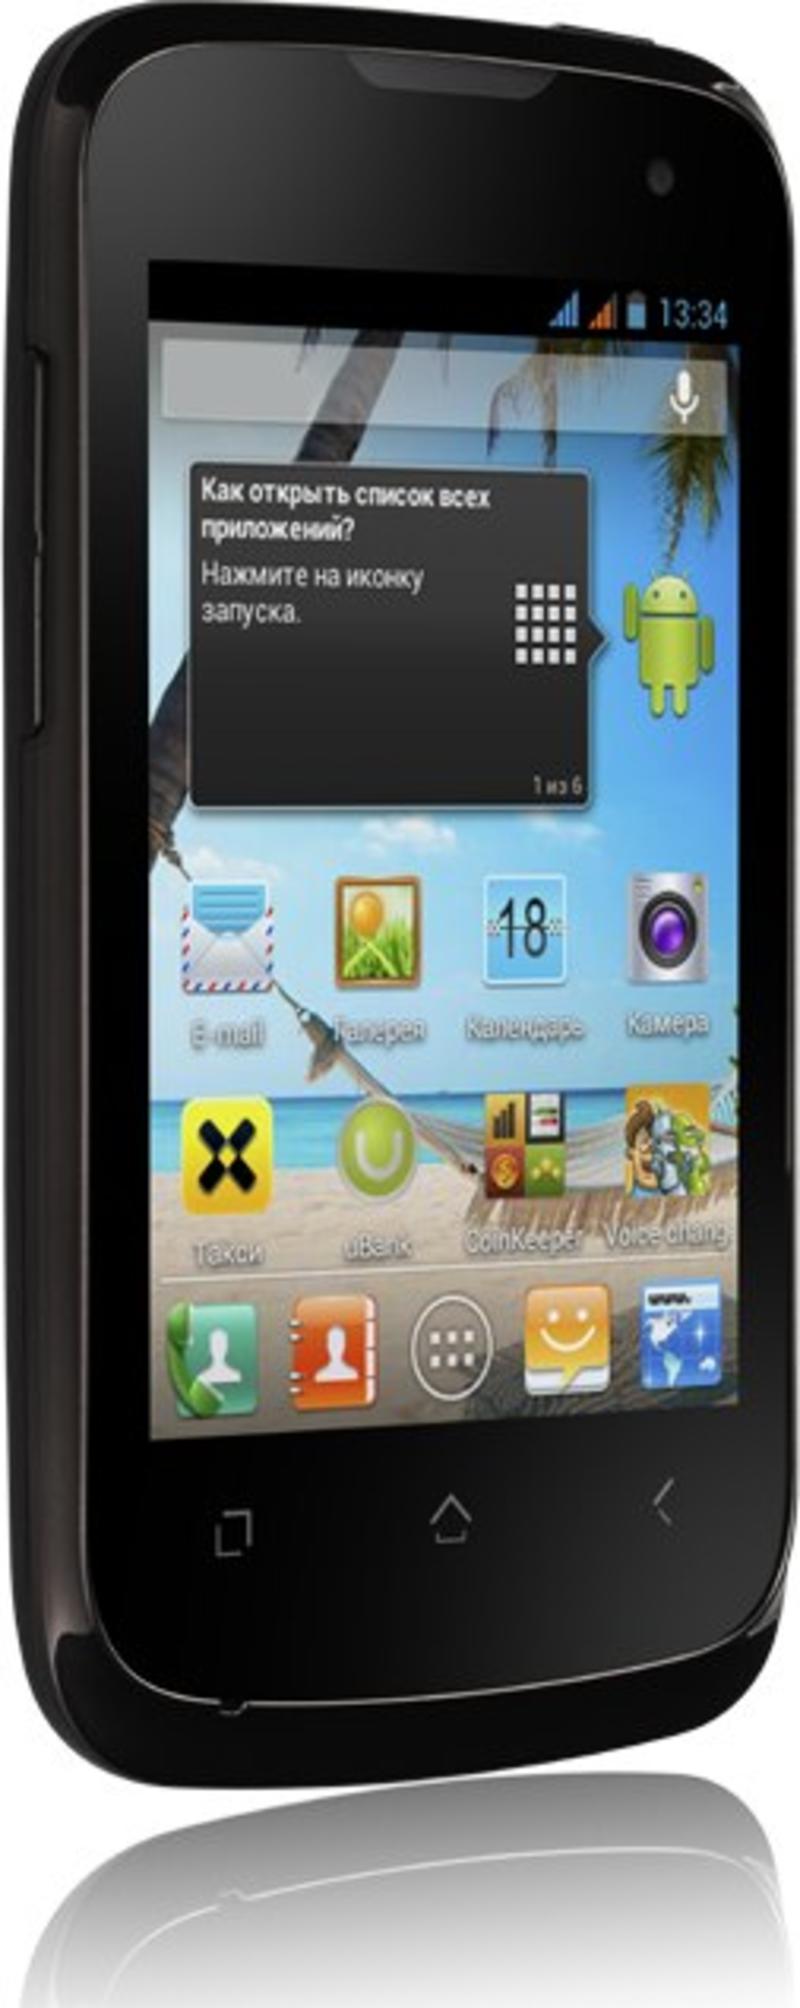 Дешевые ядра: в Украине появился доступный и мощный смартфон (ФОТО) / fly.ua